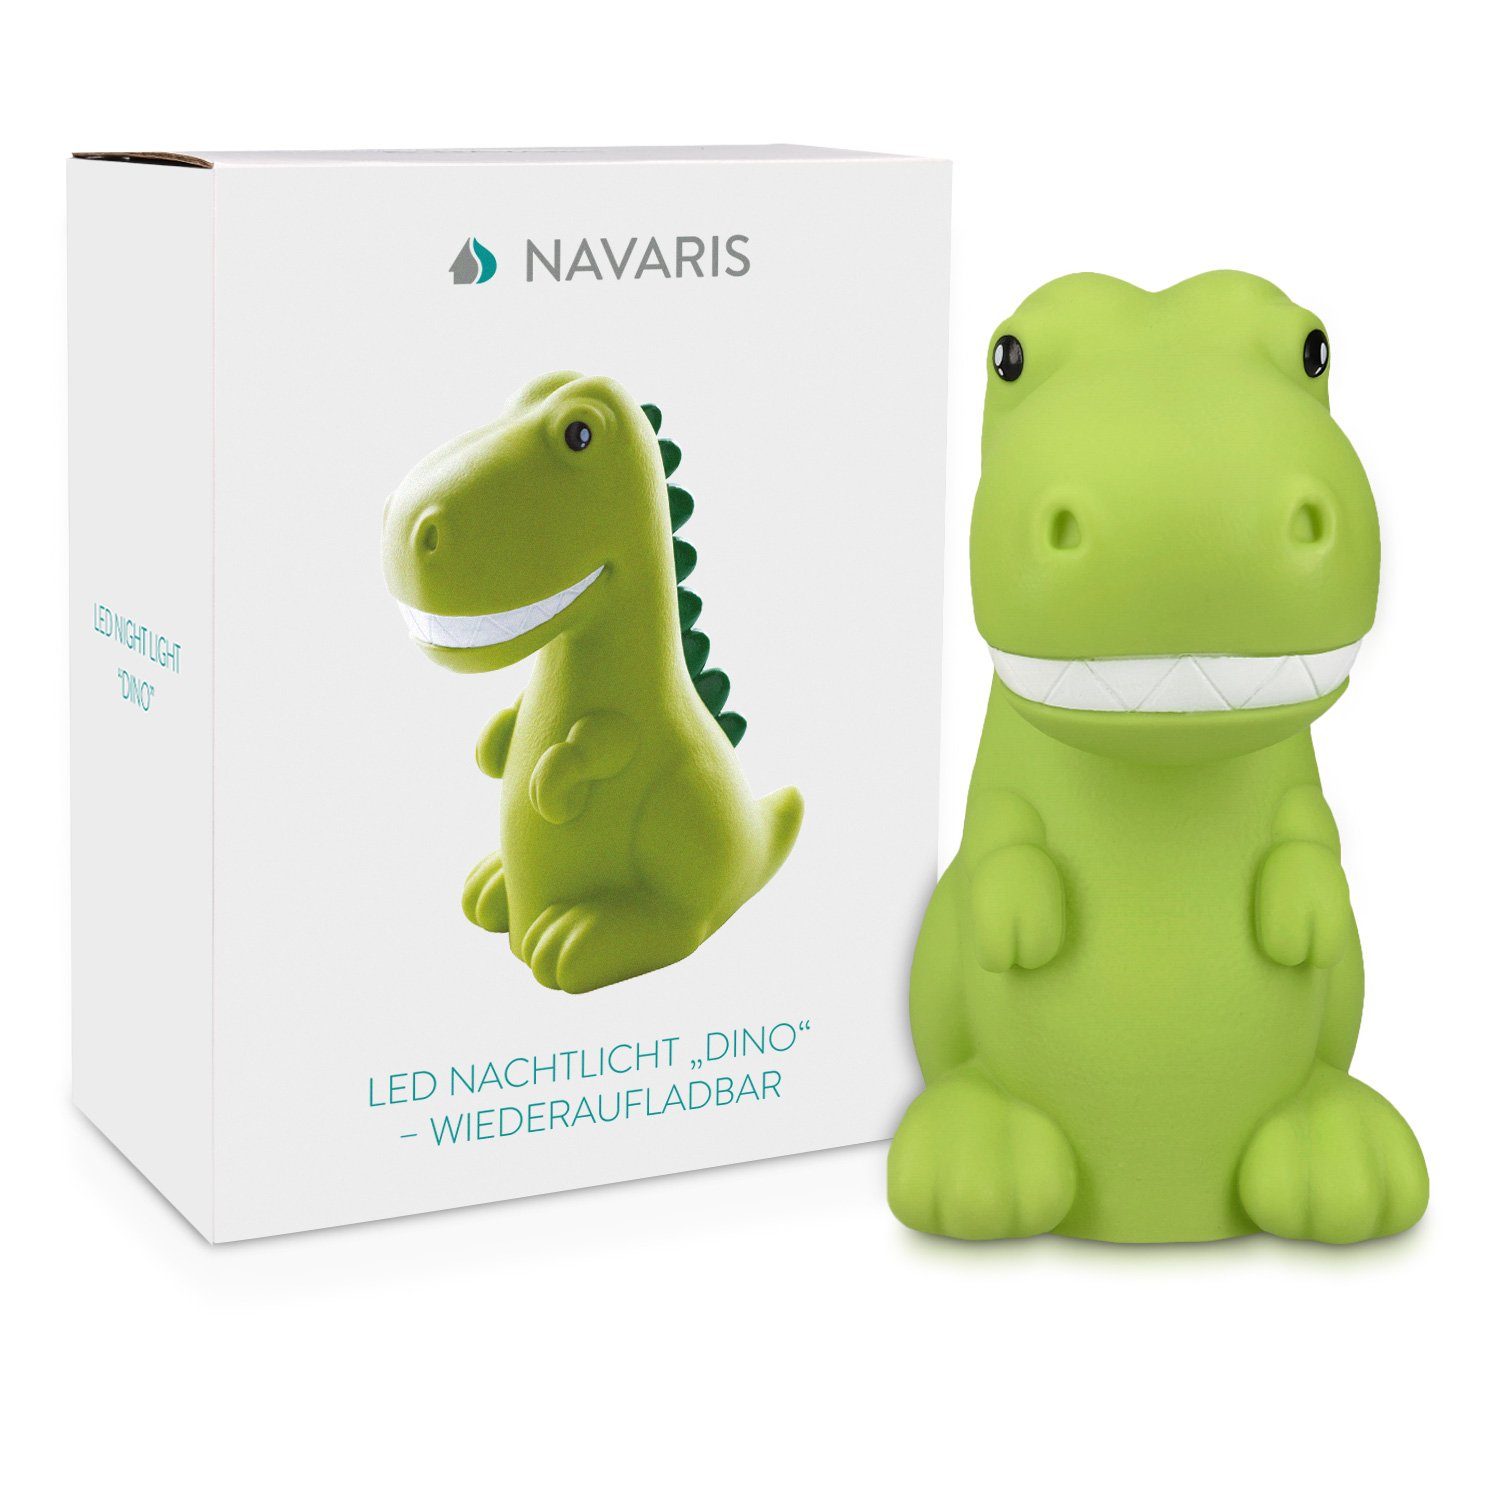 Navaris LED Nachtlicht LED Nachtleuchte - Design Grün Dino wiederaufladbar mit Timer